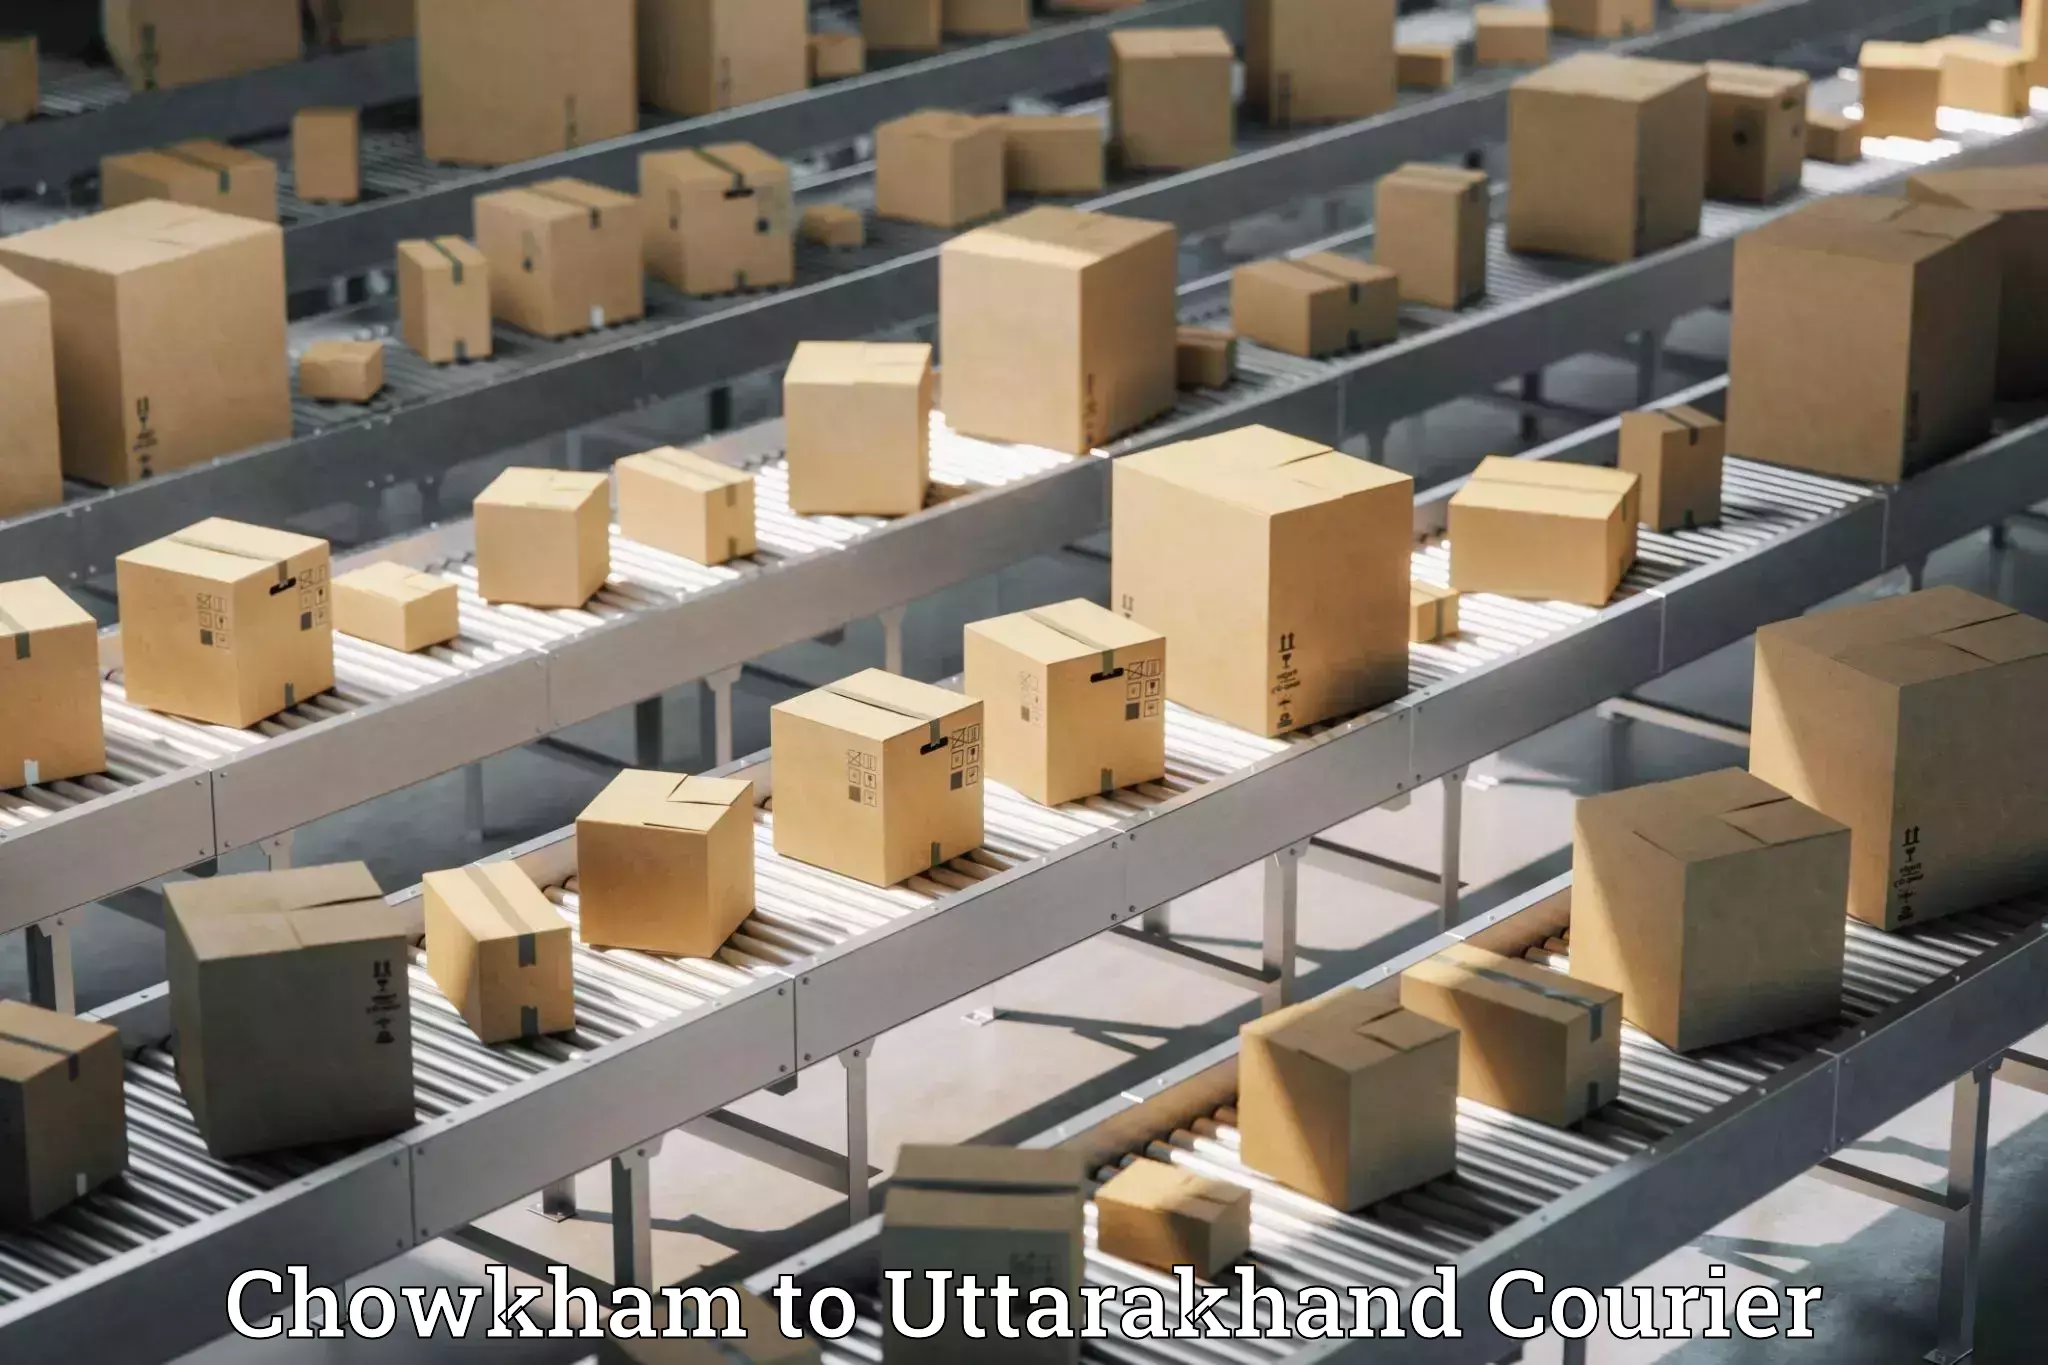 Baggage shipping experts Chowkham to Uttarakhand